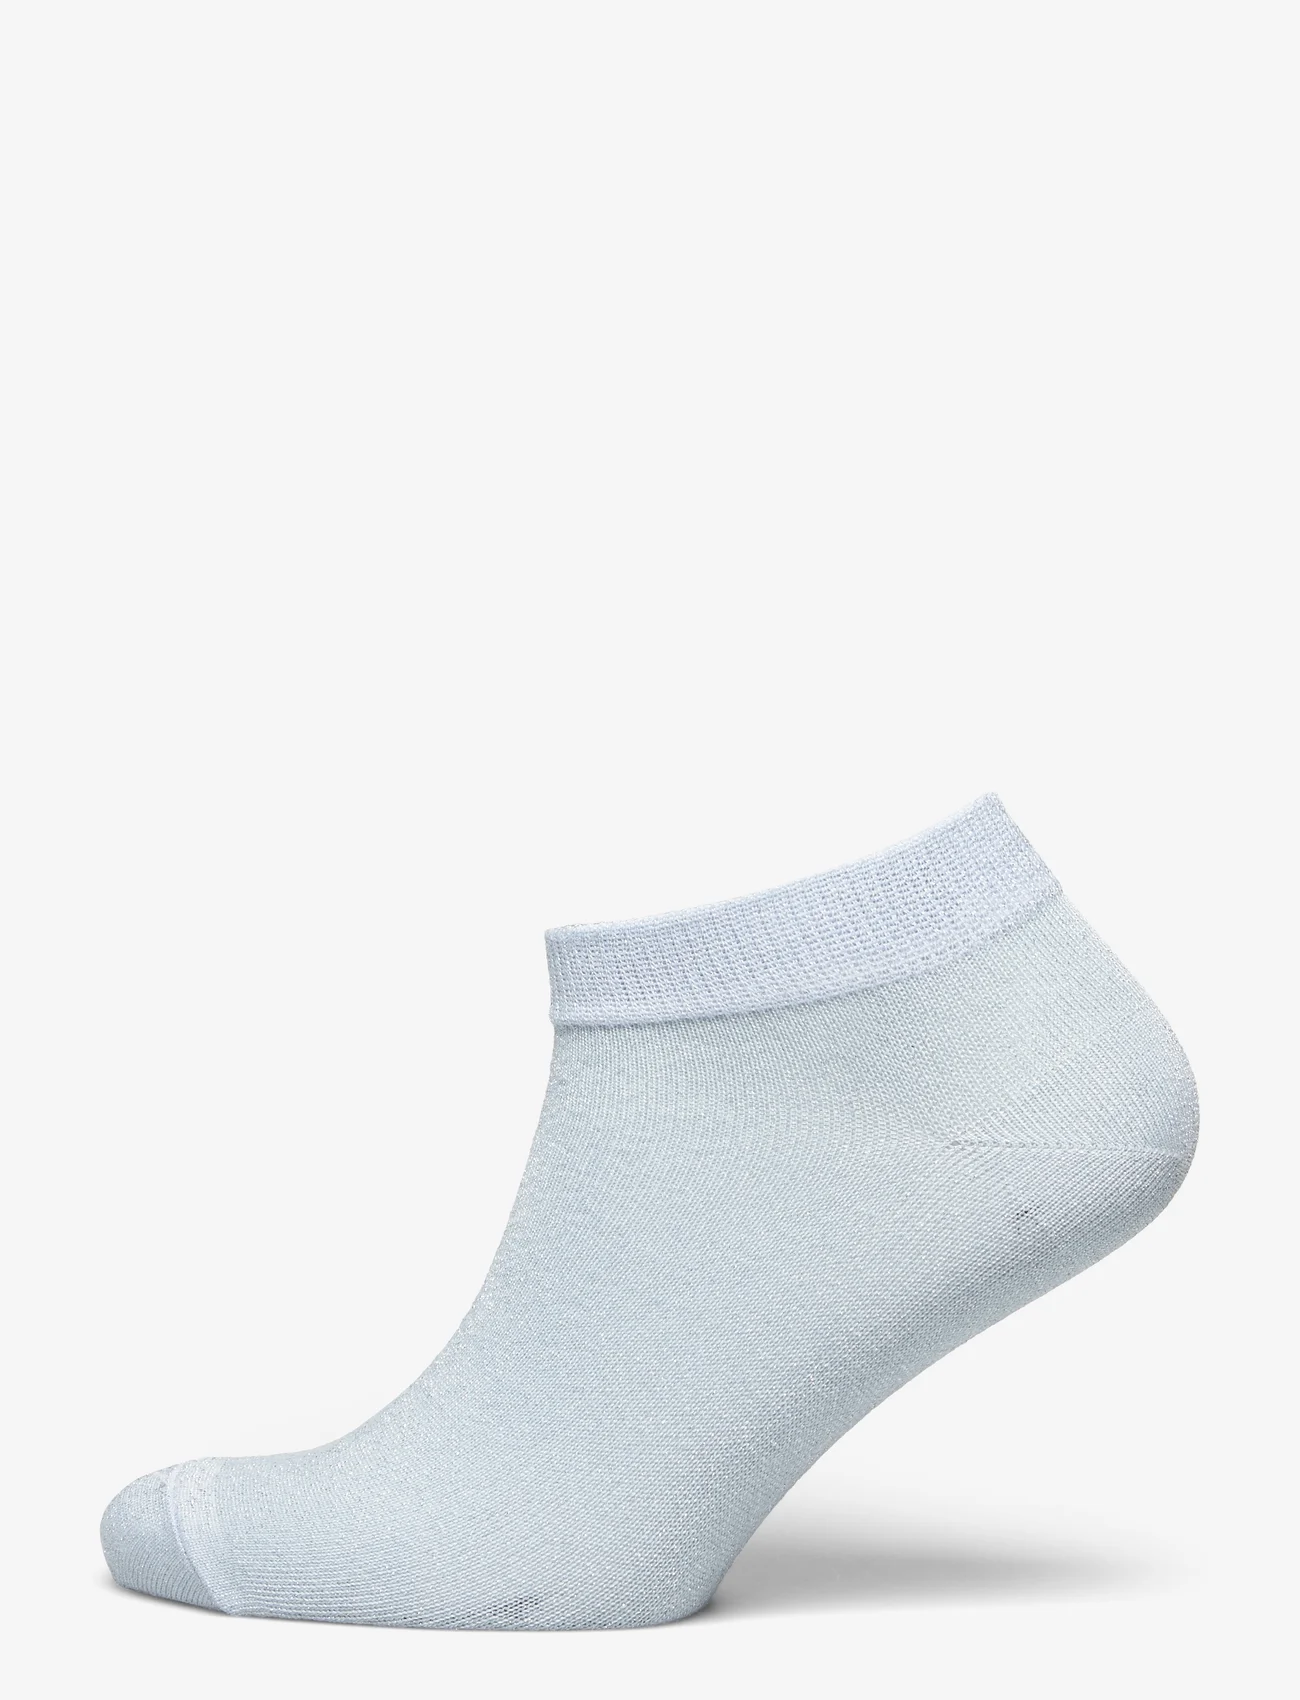 mp Denmark - Zoe sneaker socks - laveste priser - winter sky - 0